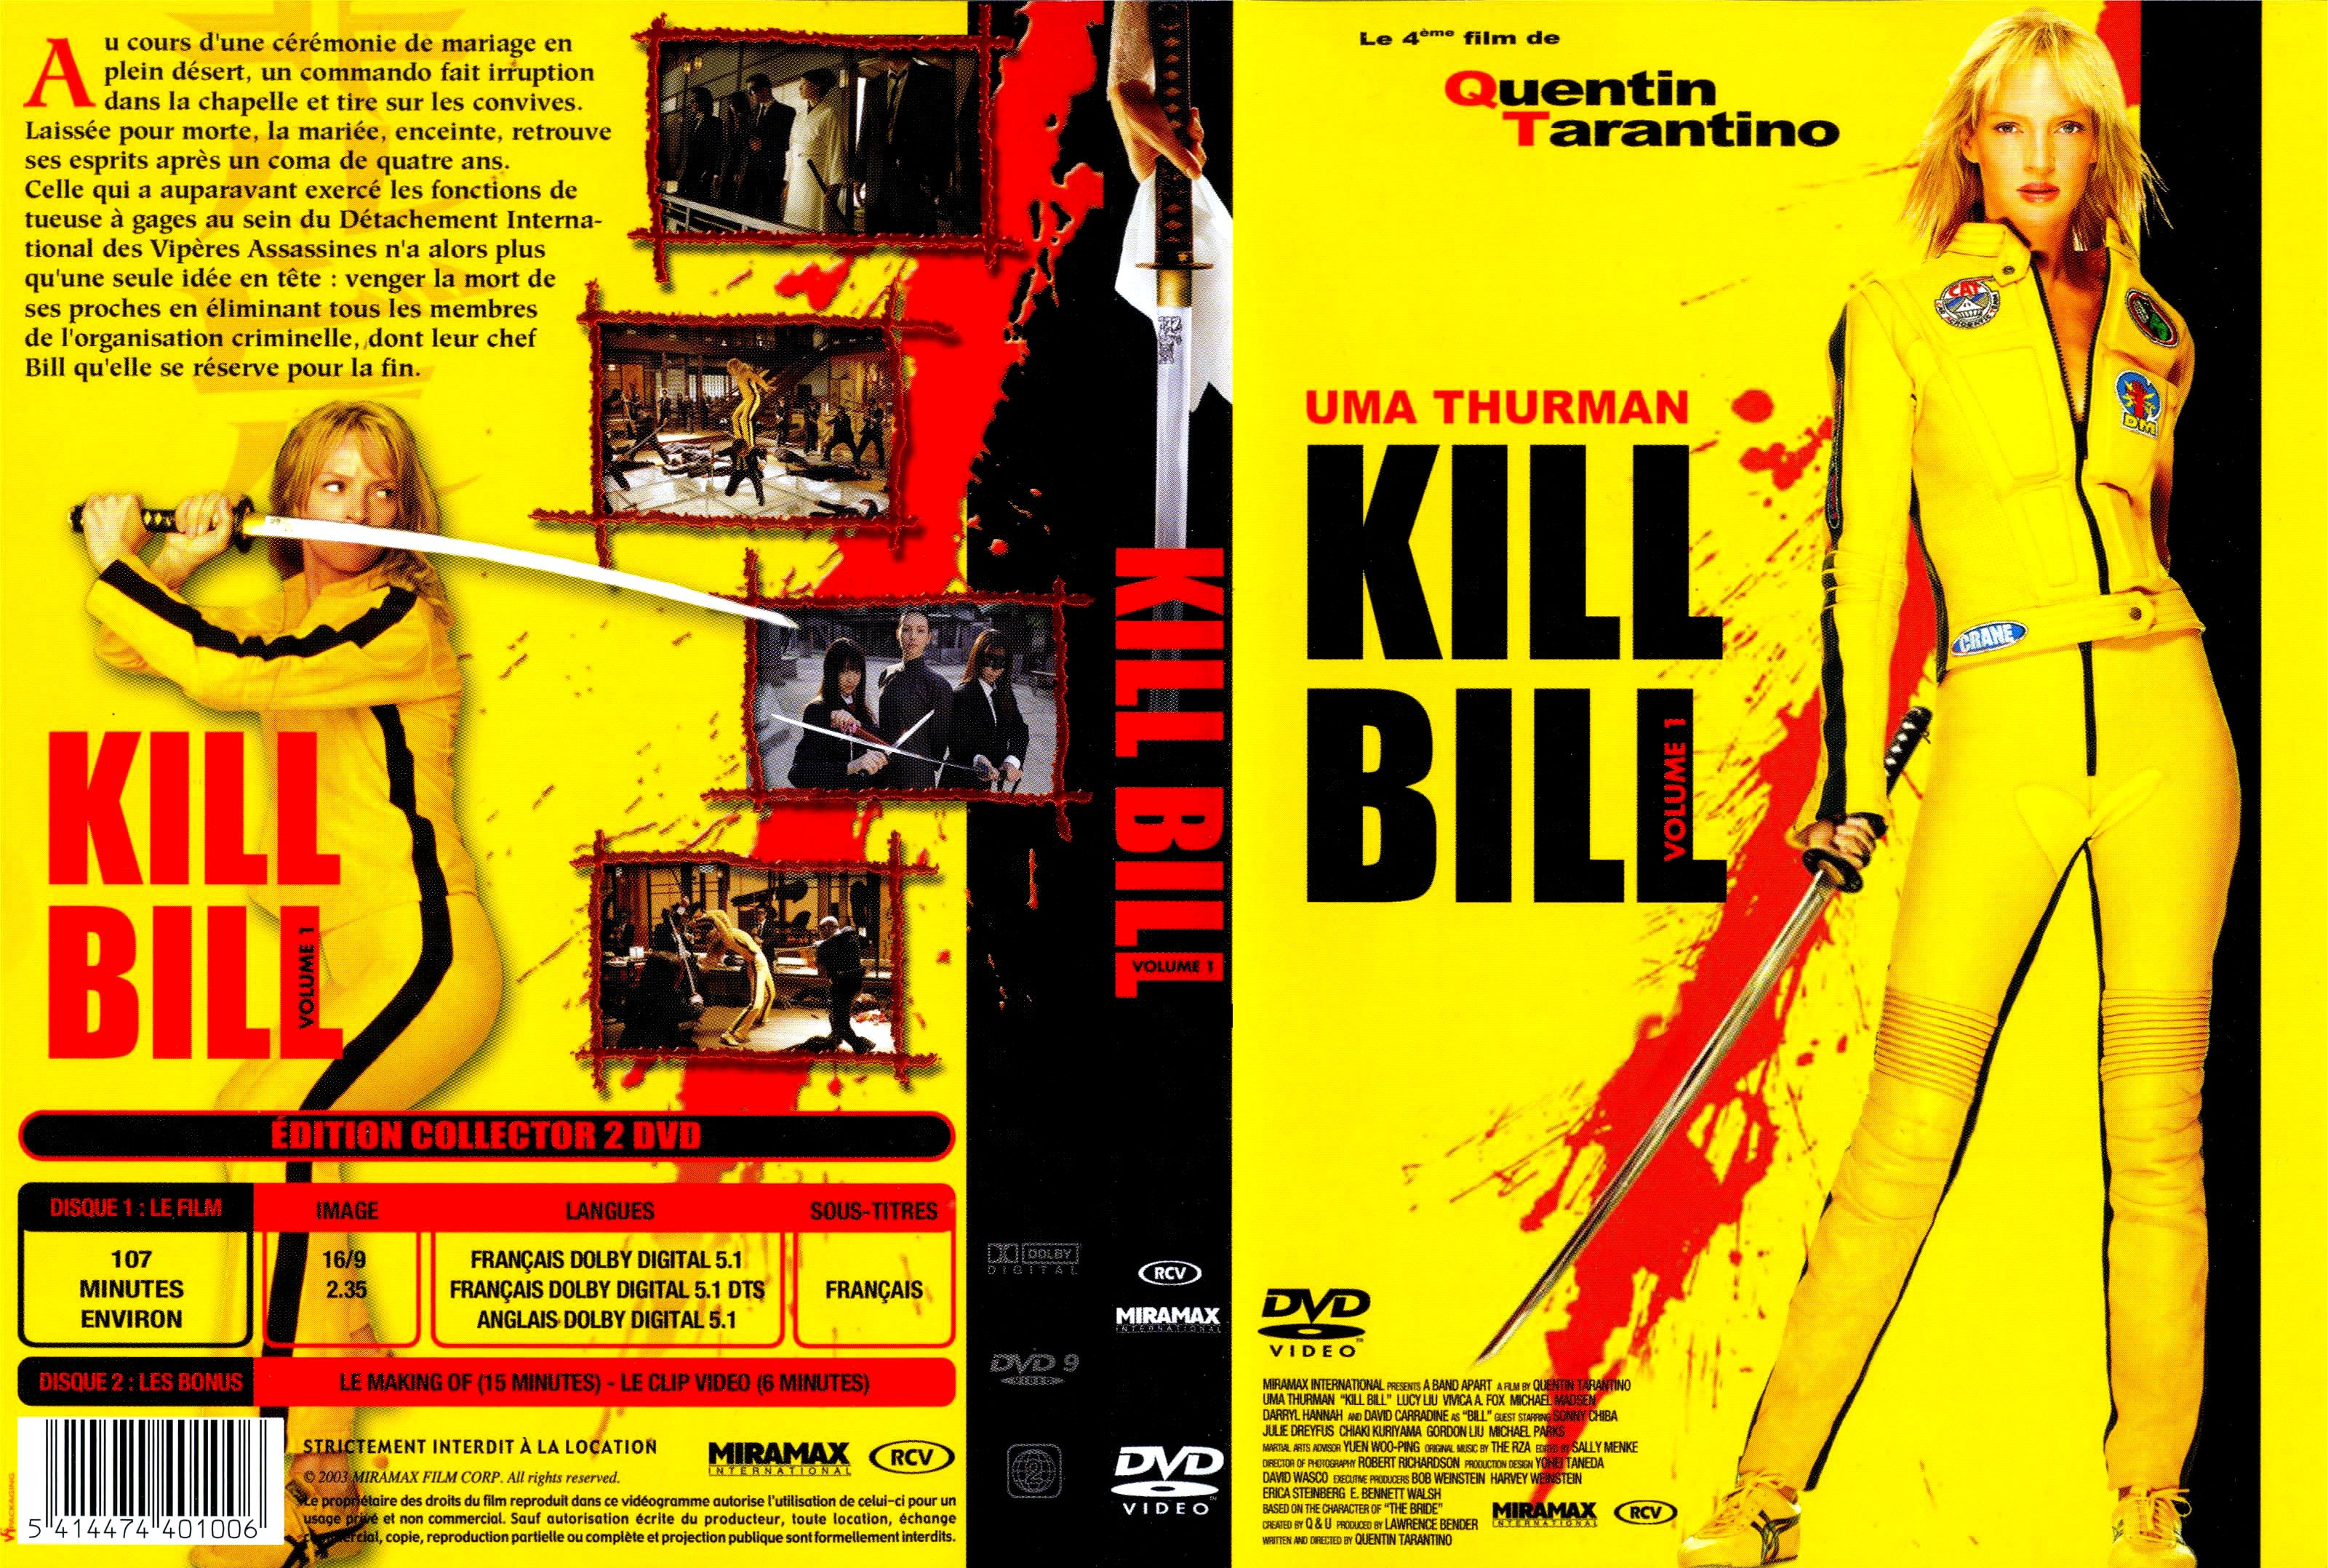 Jaquette DVD Kill bill vol 1 v3